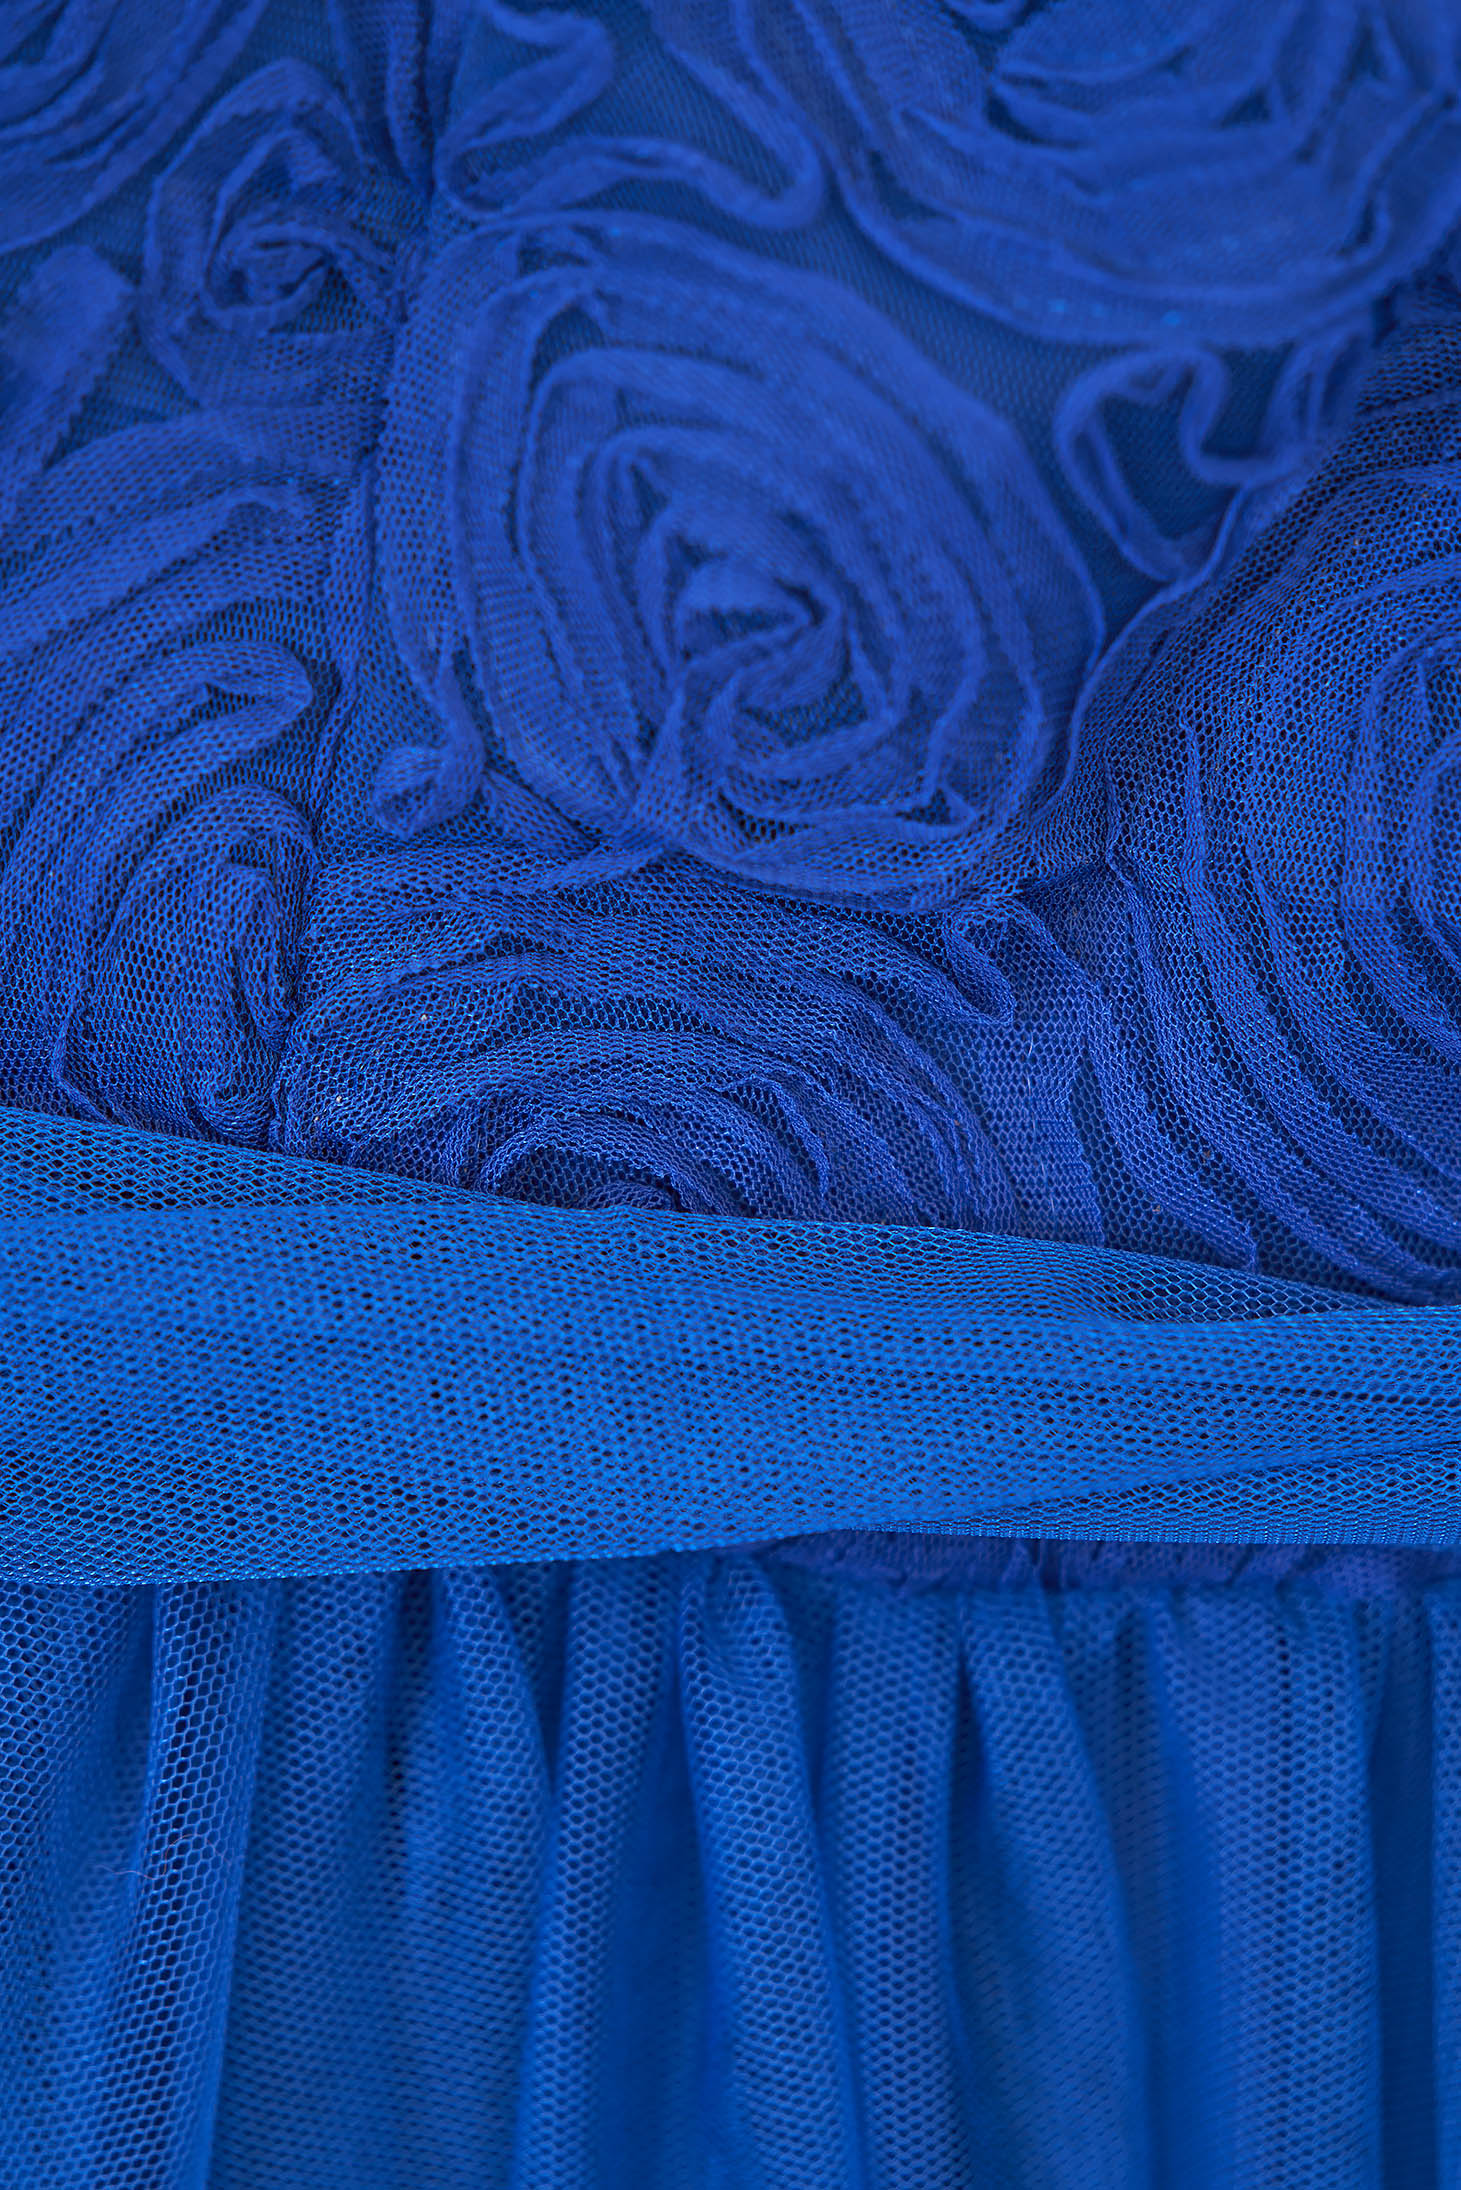 Kék midi harang ruha tüllből 3d virágos díszítéssel - StarShinerS 3 - StarShinerS.hu